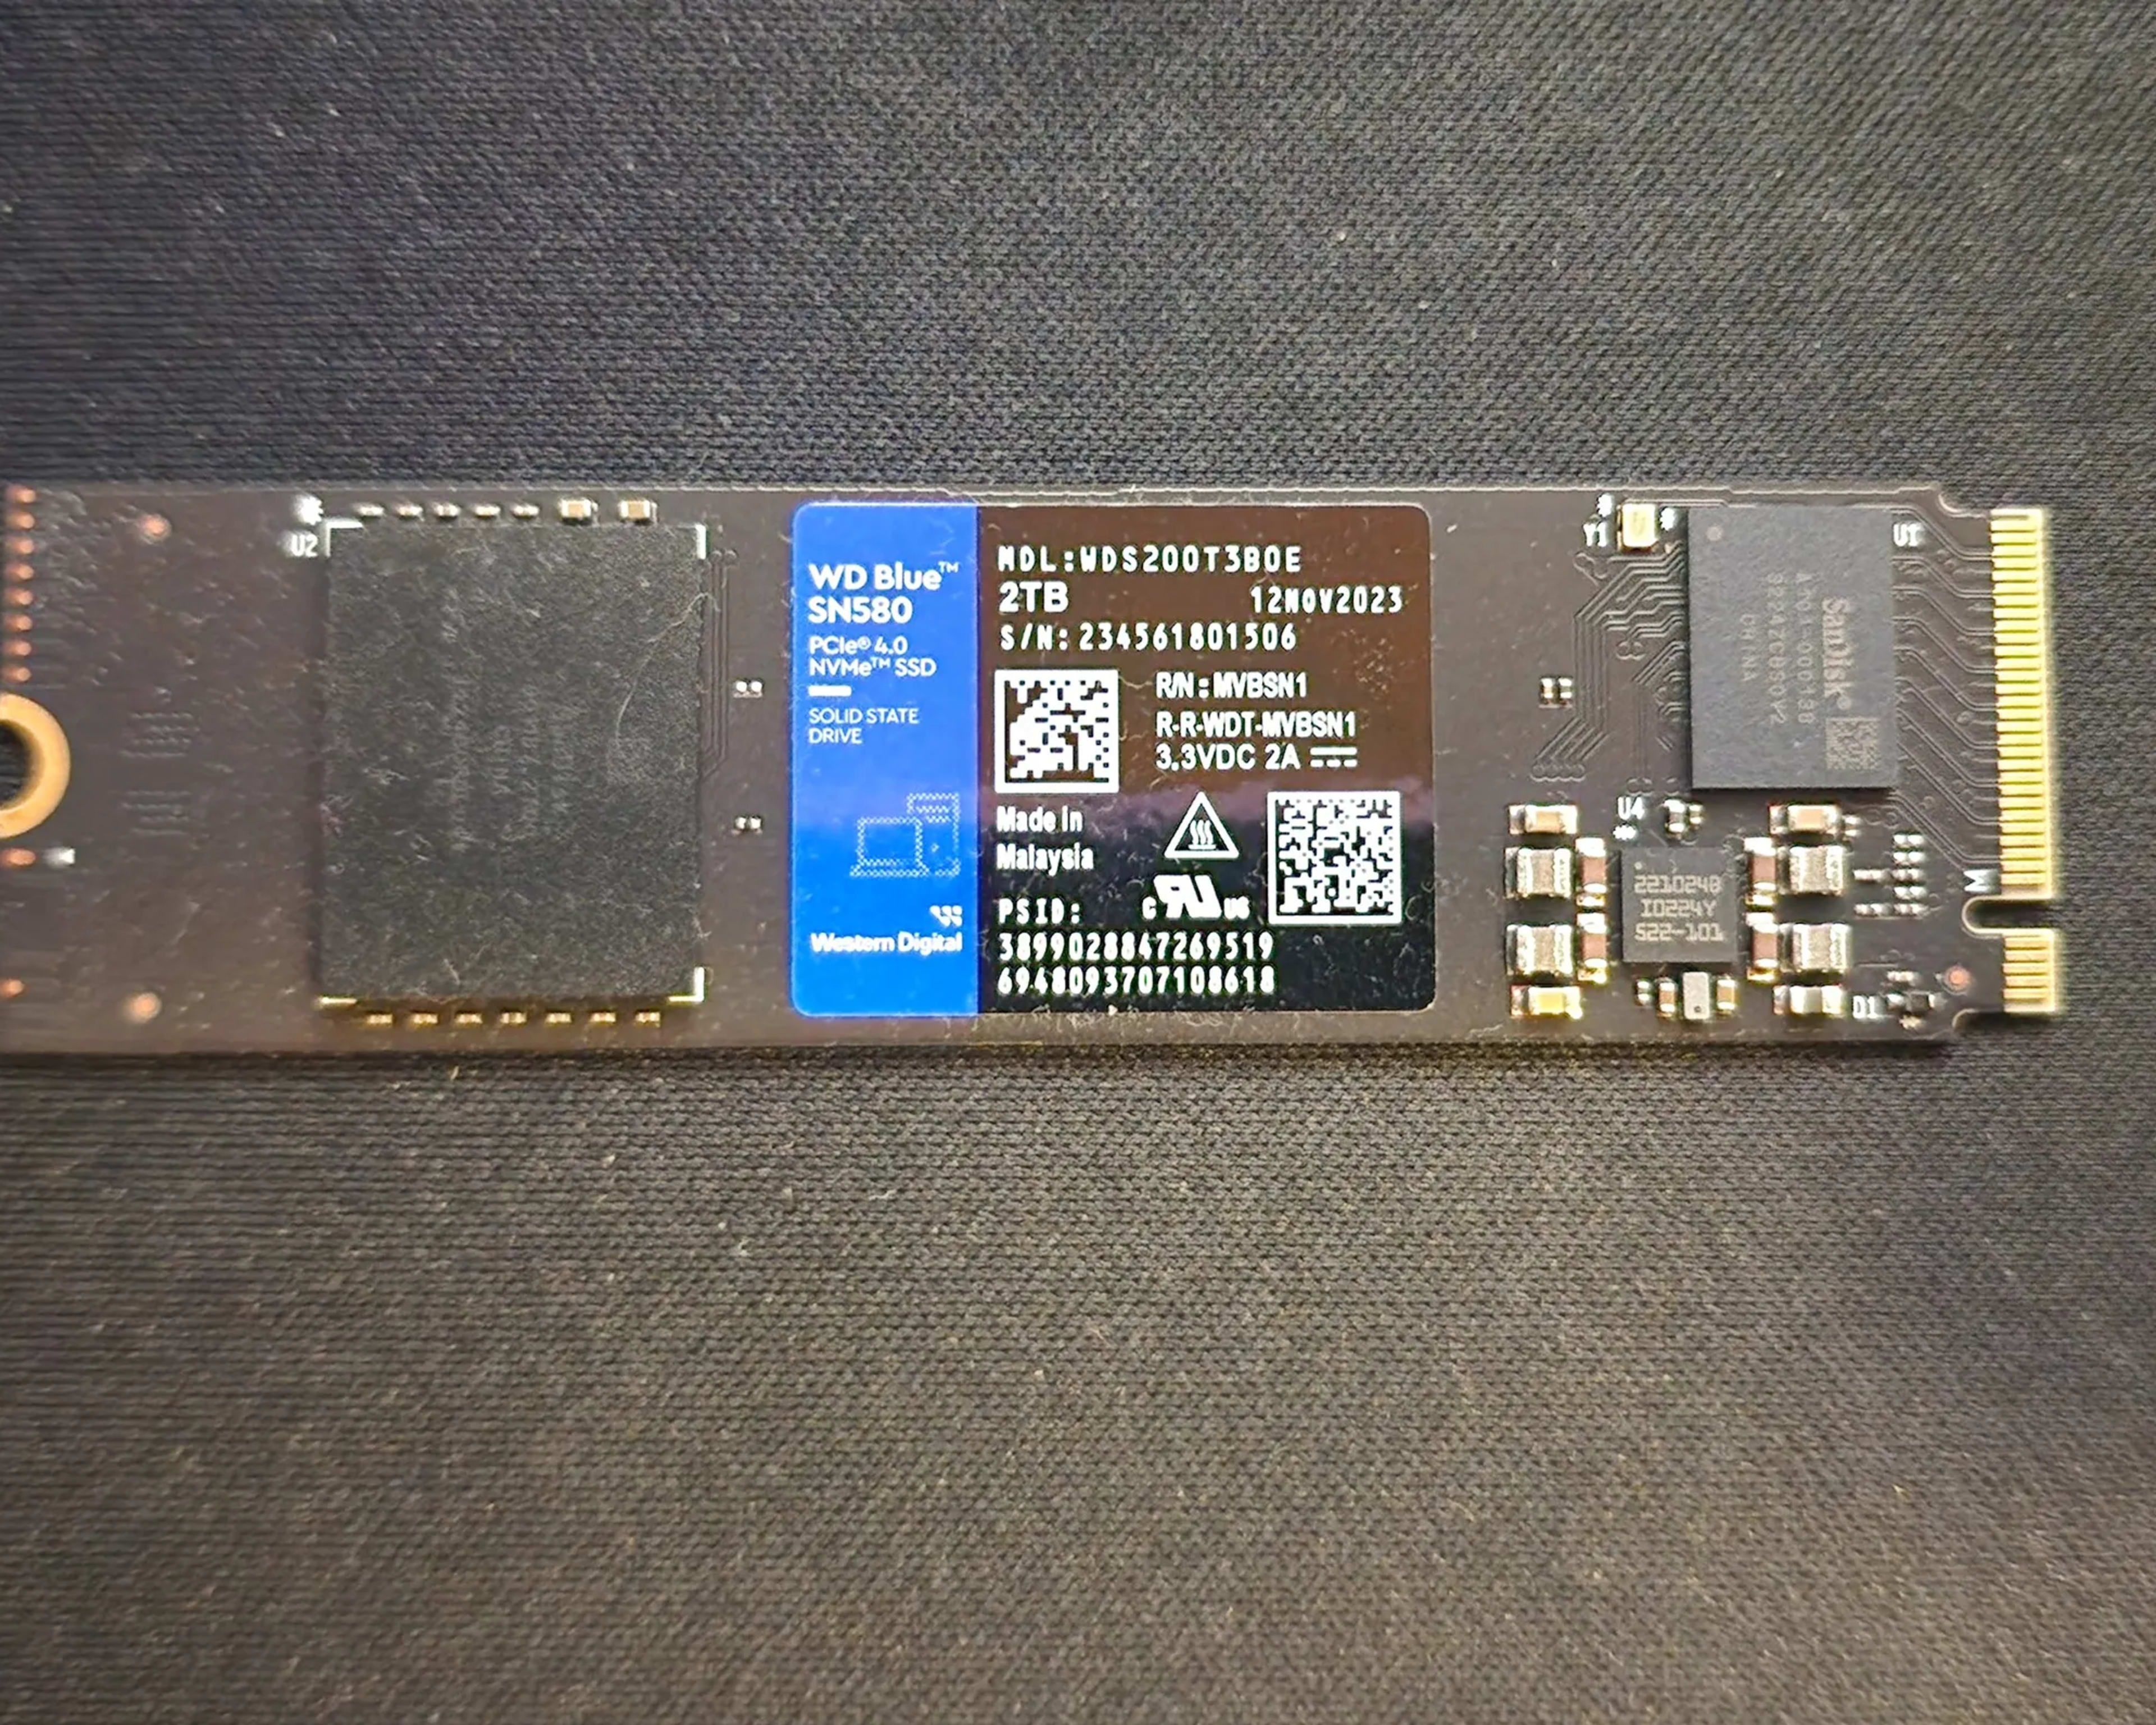 WD Blue SN580 NVMe™ SSD 2tb